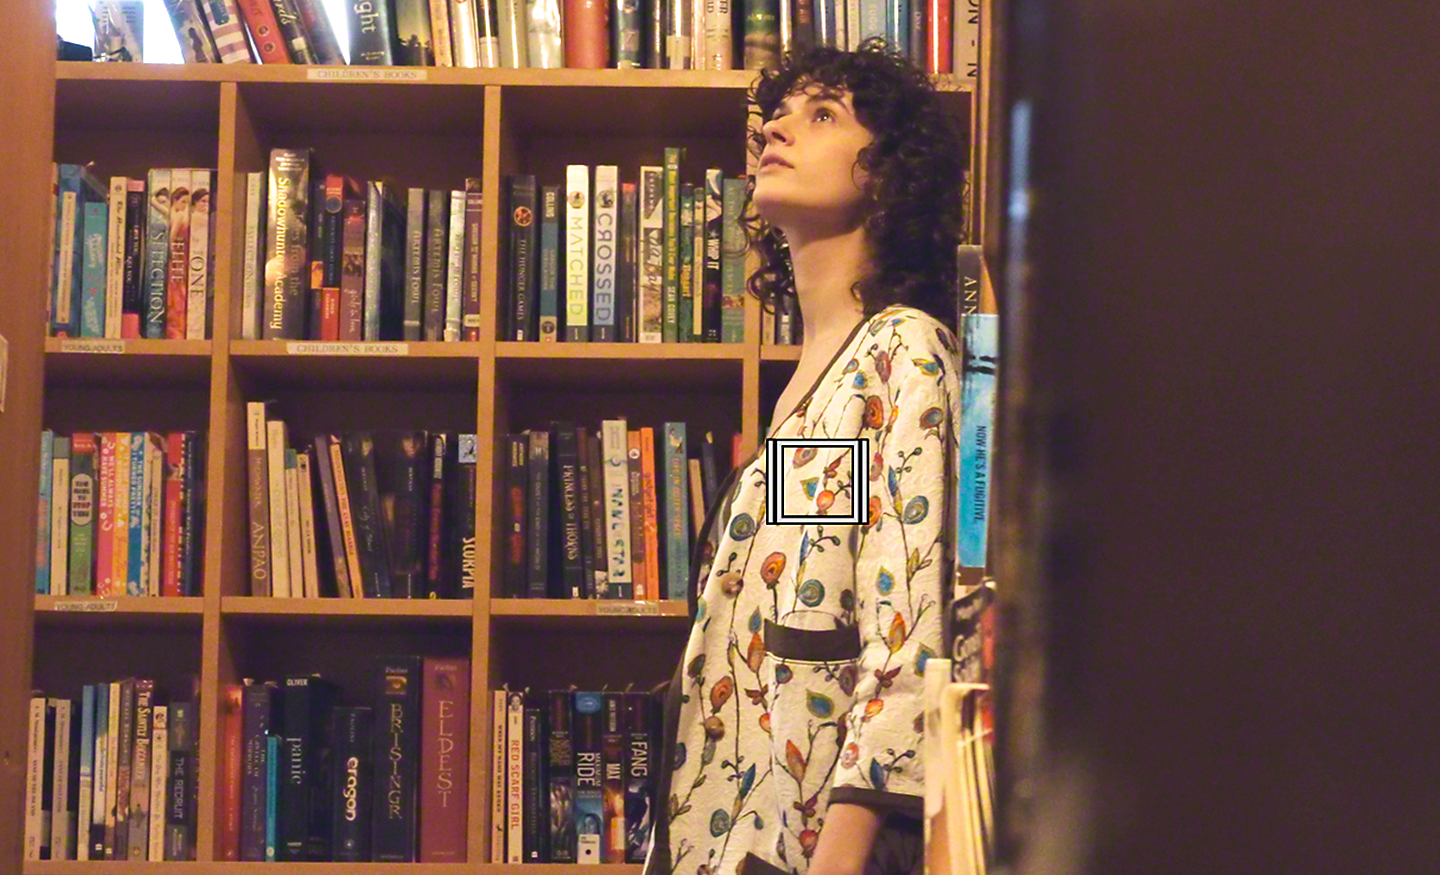 Femme flânant dans une bibliothèque, un carré blanc représentant le suivi des objets pour les vidéos